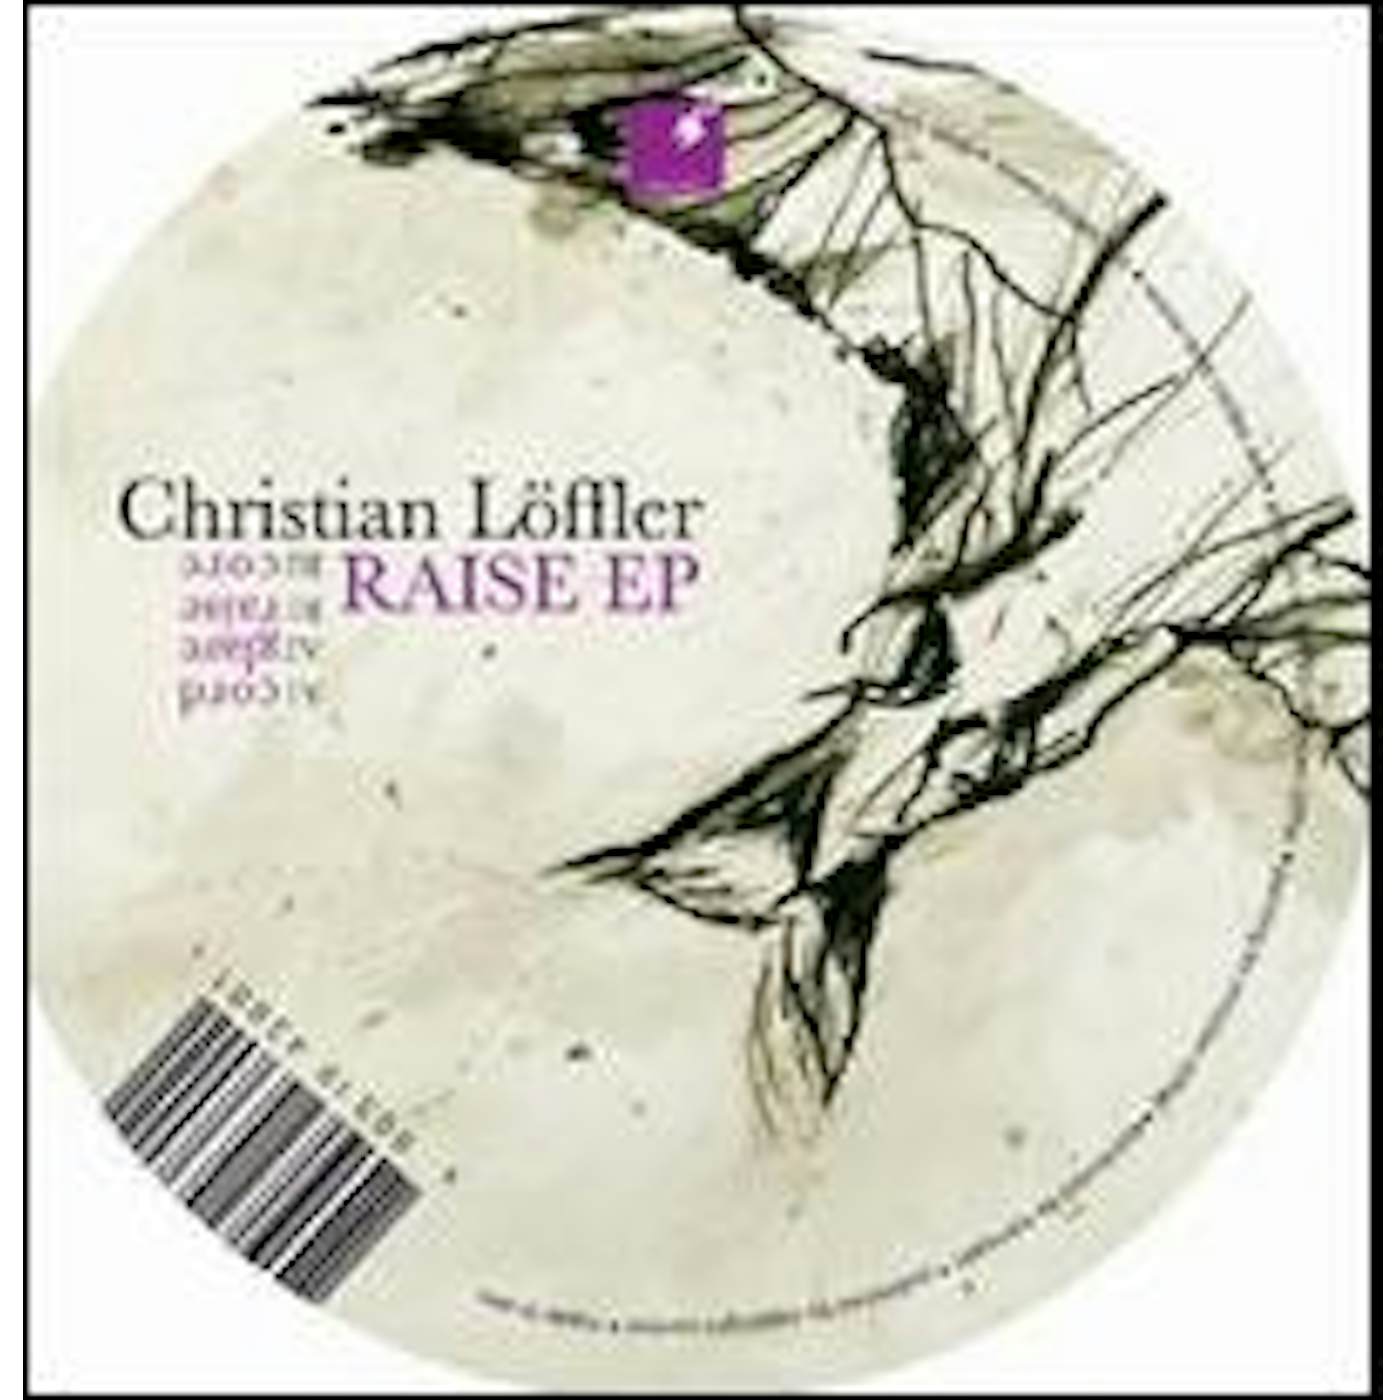 Christian Löffler RAISE Vinyl Record